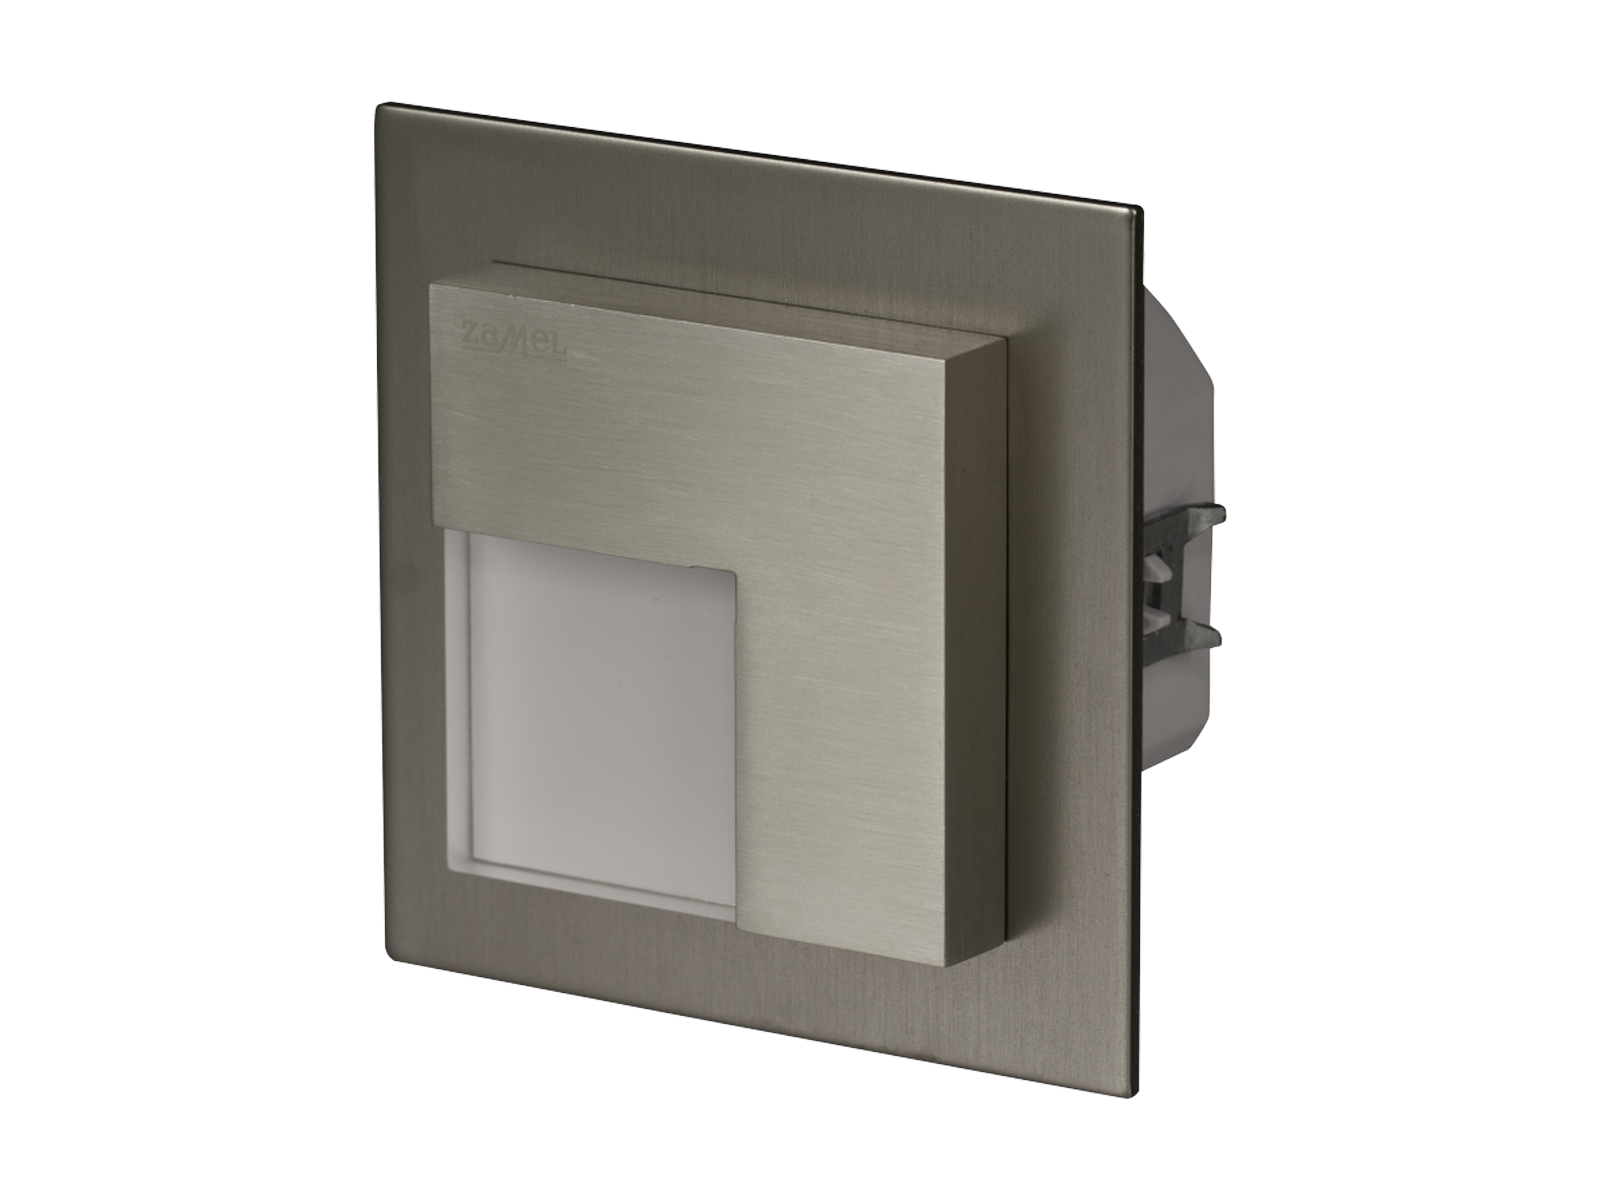 Svítidlo LED do krabice pod omítku LEDIX TIMO 230V AC, kartáčovaná ocel, teplá bílá, IP20